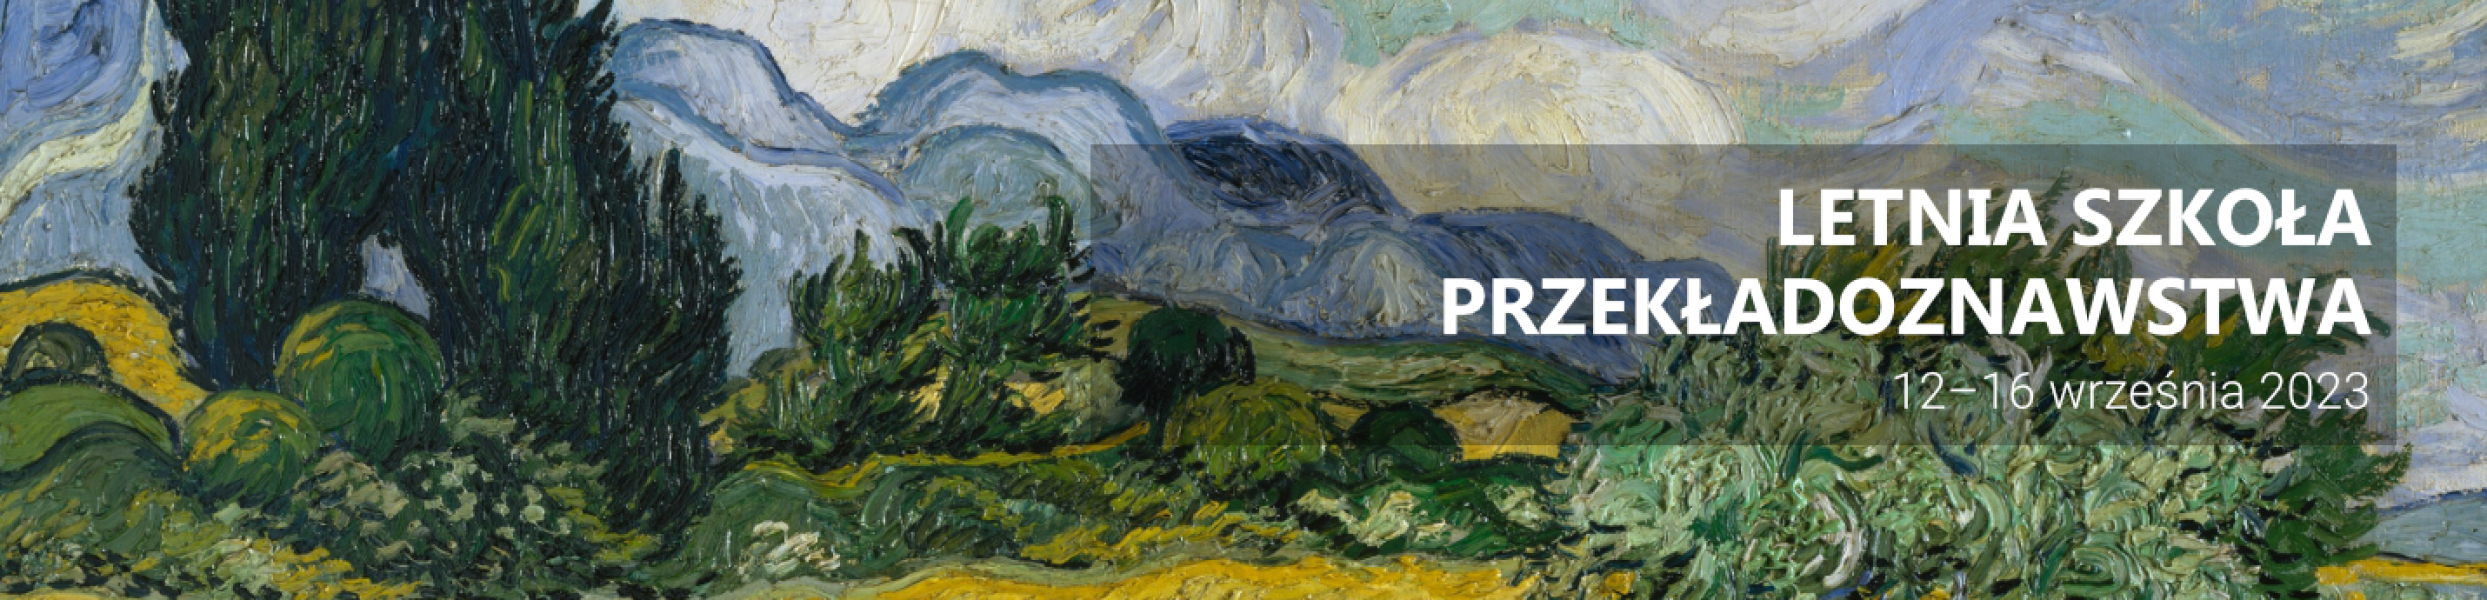 Na obraz Van Gogha przedstawiający letni krajobraz nałożono napis 